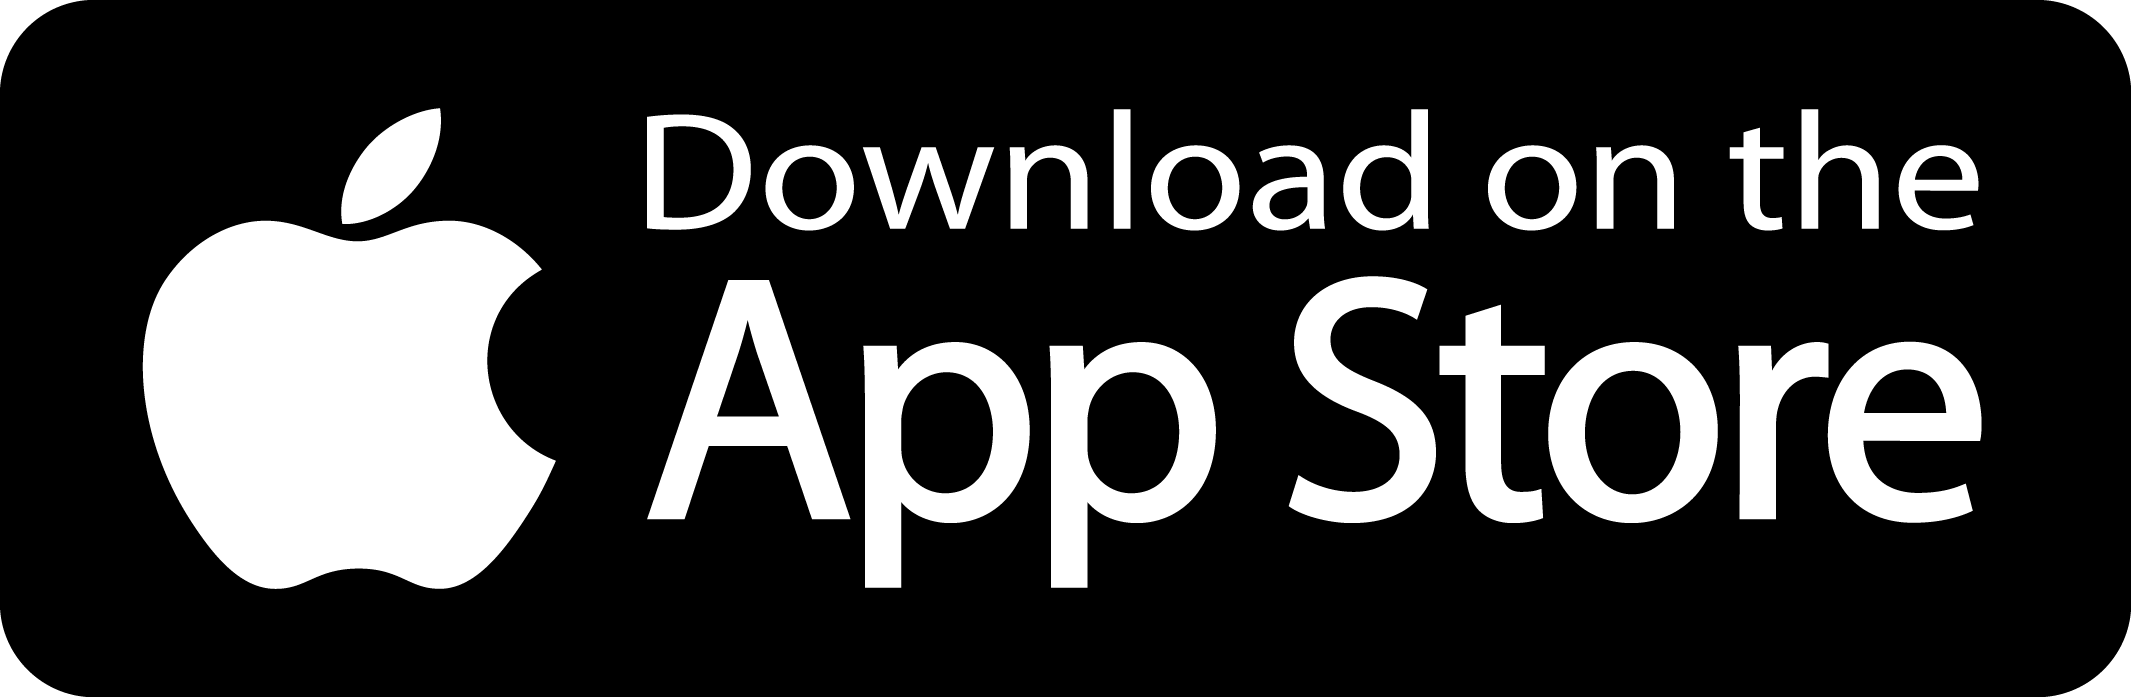 MyWoollie App Store